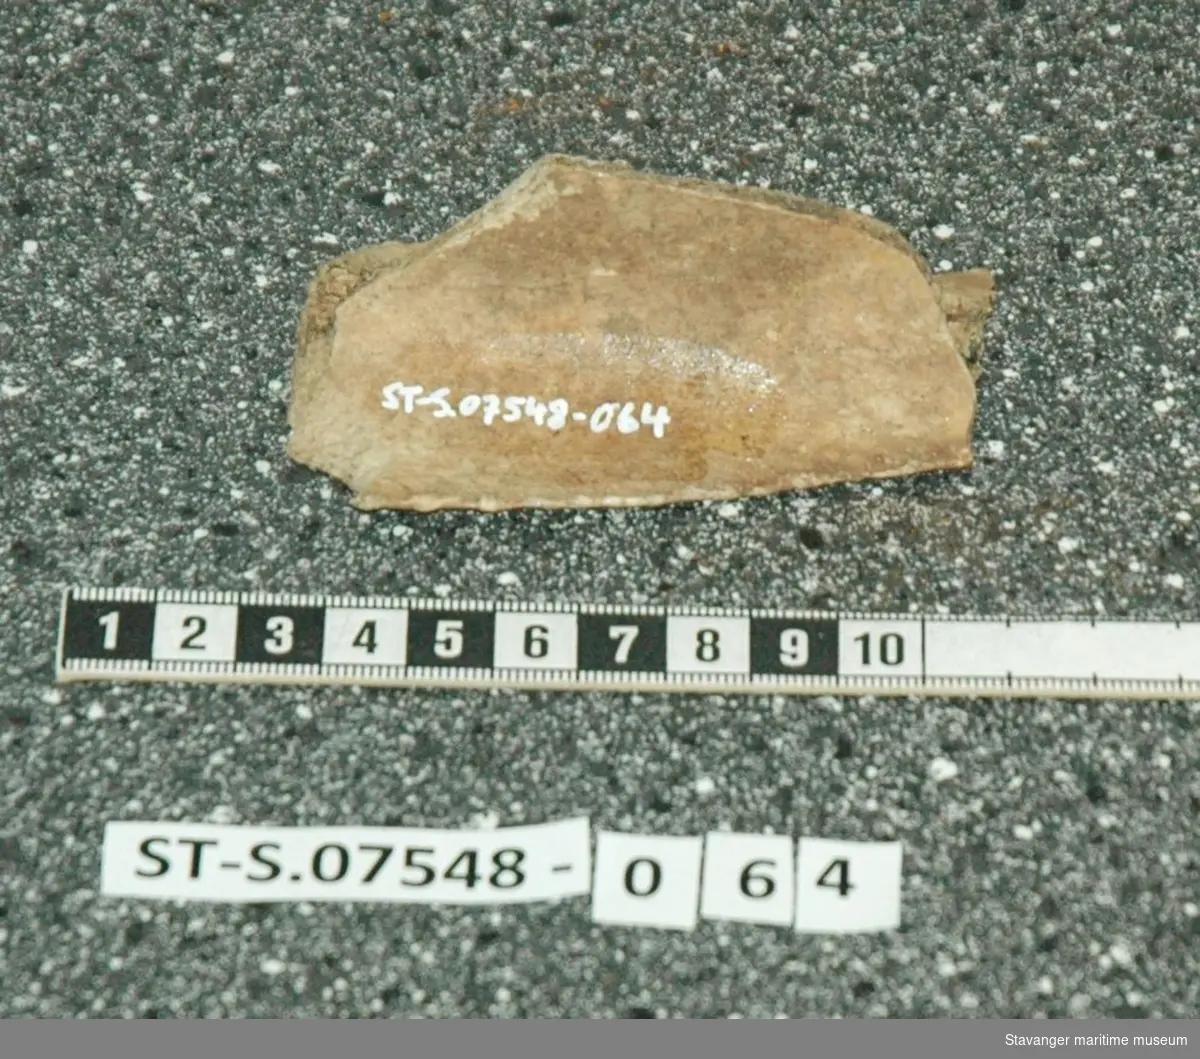 Dyrebeinfragment fra sjakt 2 ca 30cm dybde, funnet 5.2.2016.